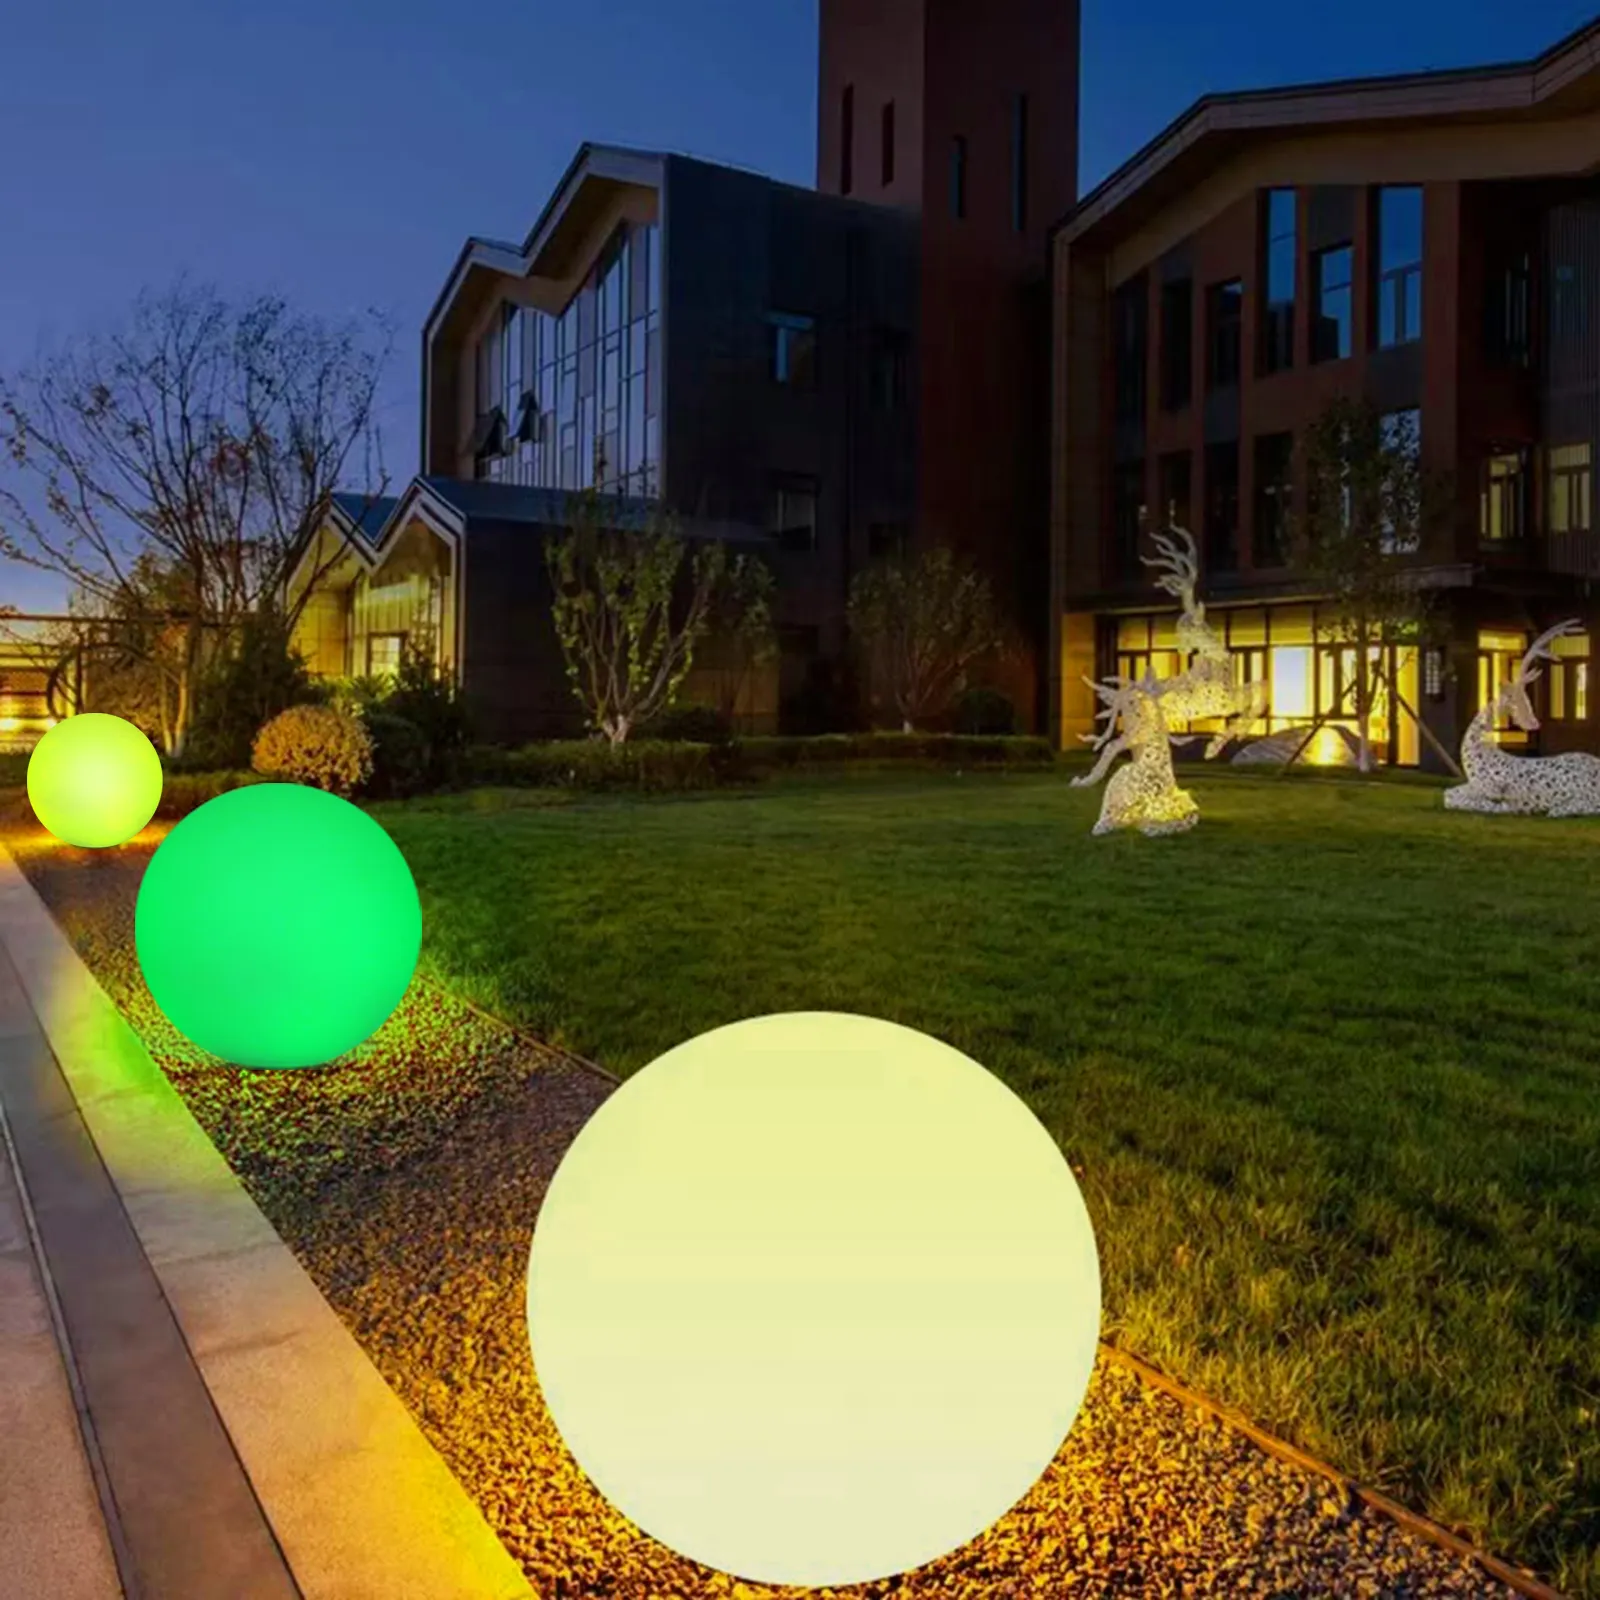 Lampu rumput tenaga surya LED warna-warni, lampu taman dekorasi Aktivitas luar ruangan lanskap pantai Desain bola bercahaya